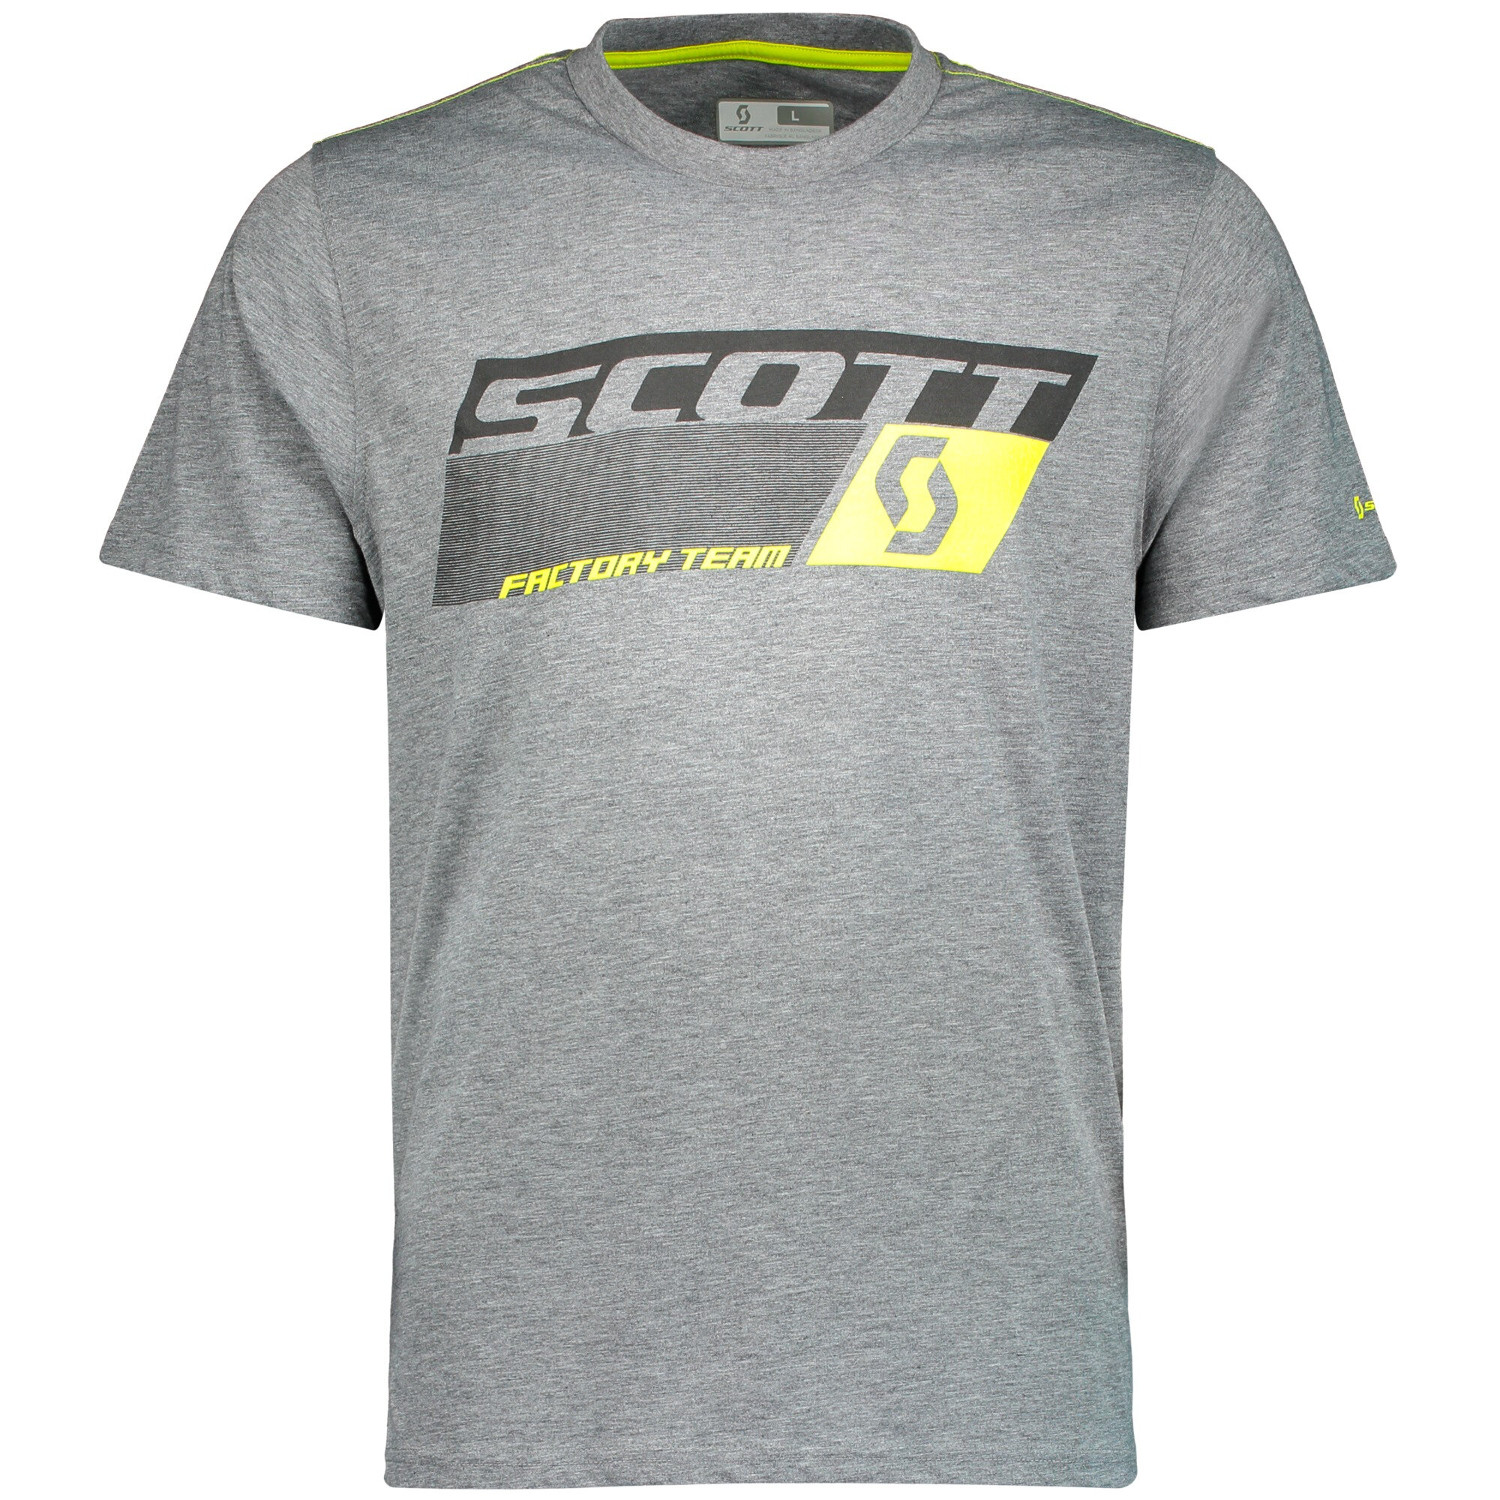 Scott T-Shirt Factory Team Dri Gris foncé Melange/Sulphur Jaune